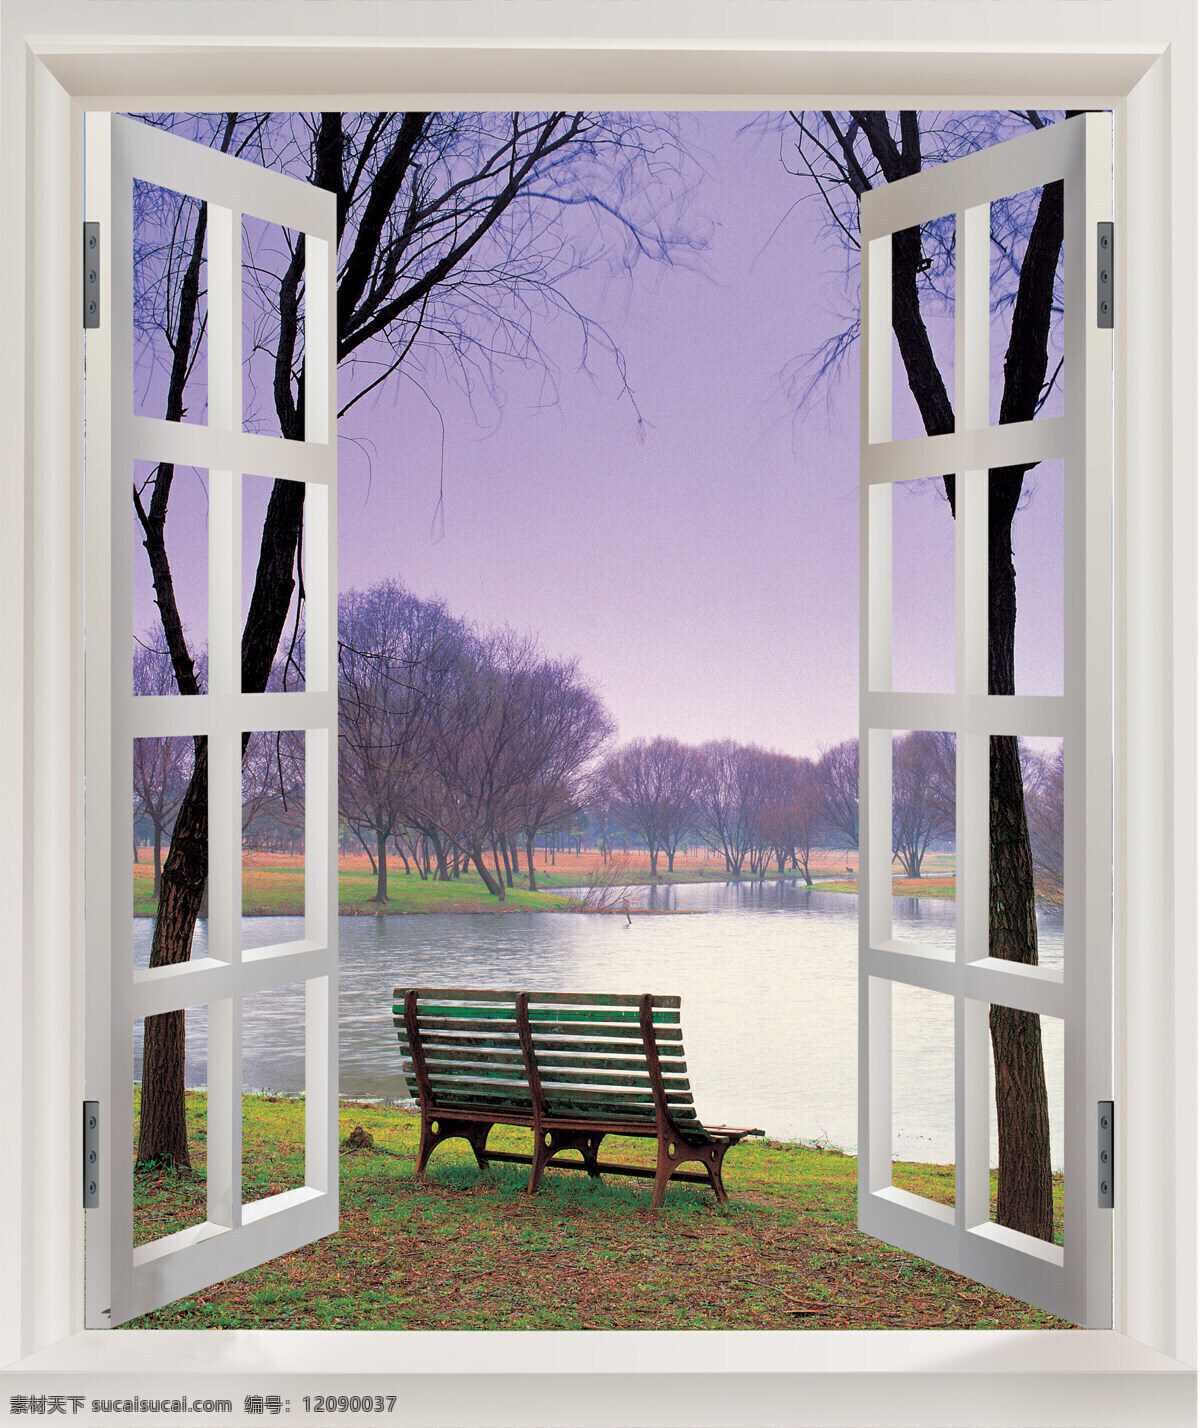 窗外风景 自然景观 自然风光 自然风景 设计图库 窗外 白色窗户 天空 树木 休息座椅 小河 秋日景色 窗外秋景